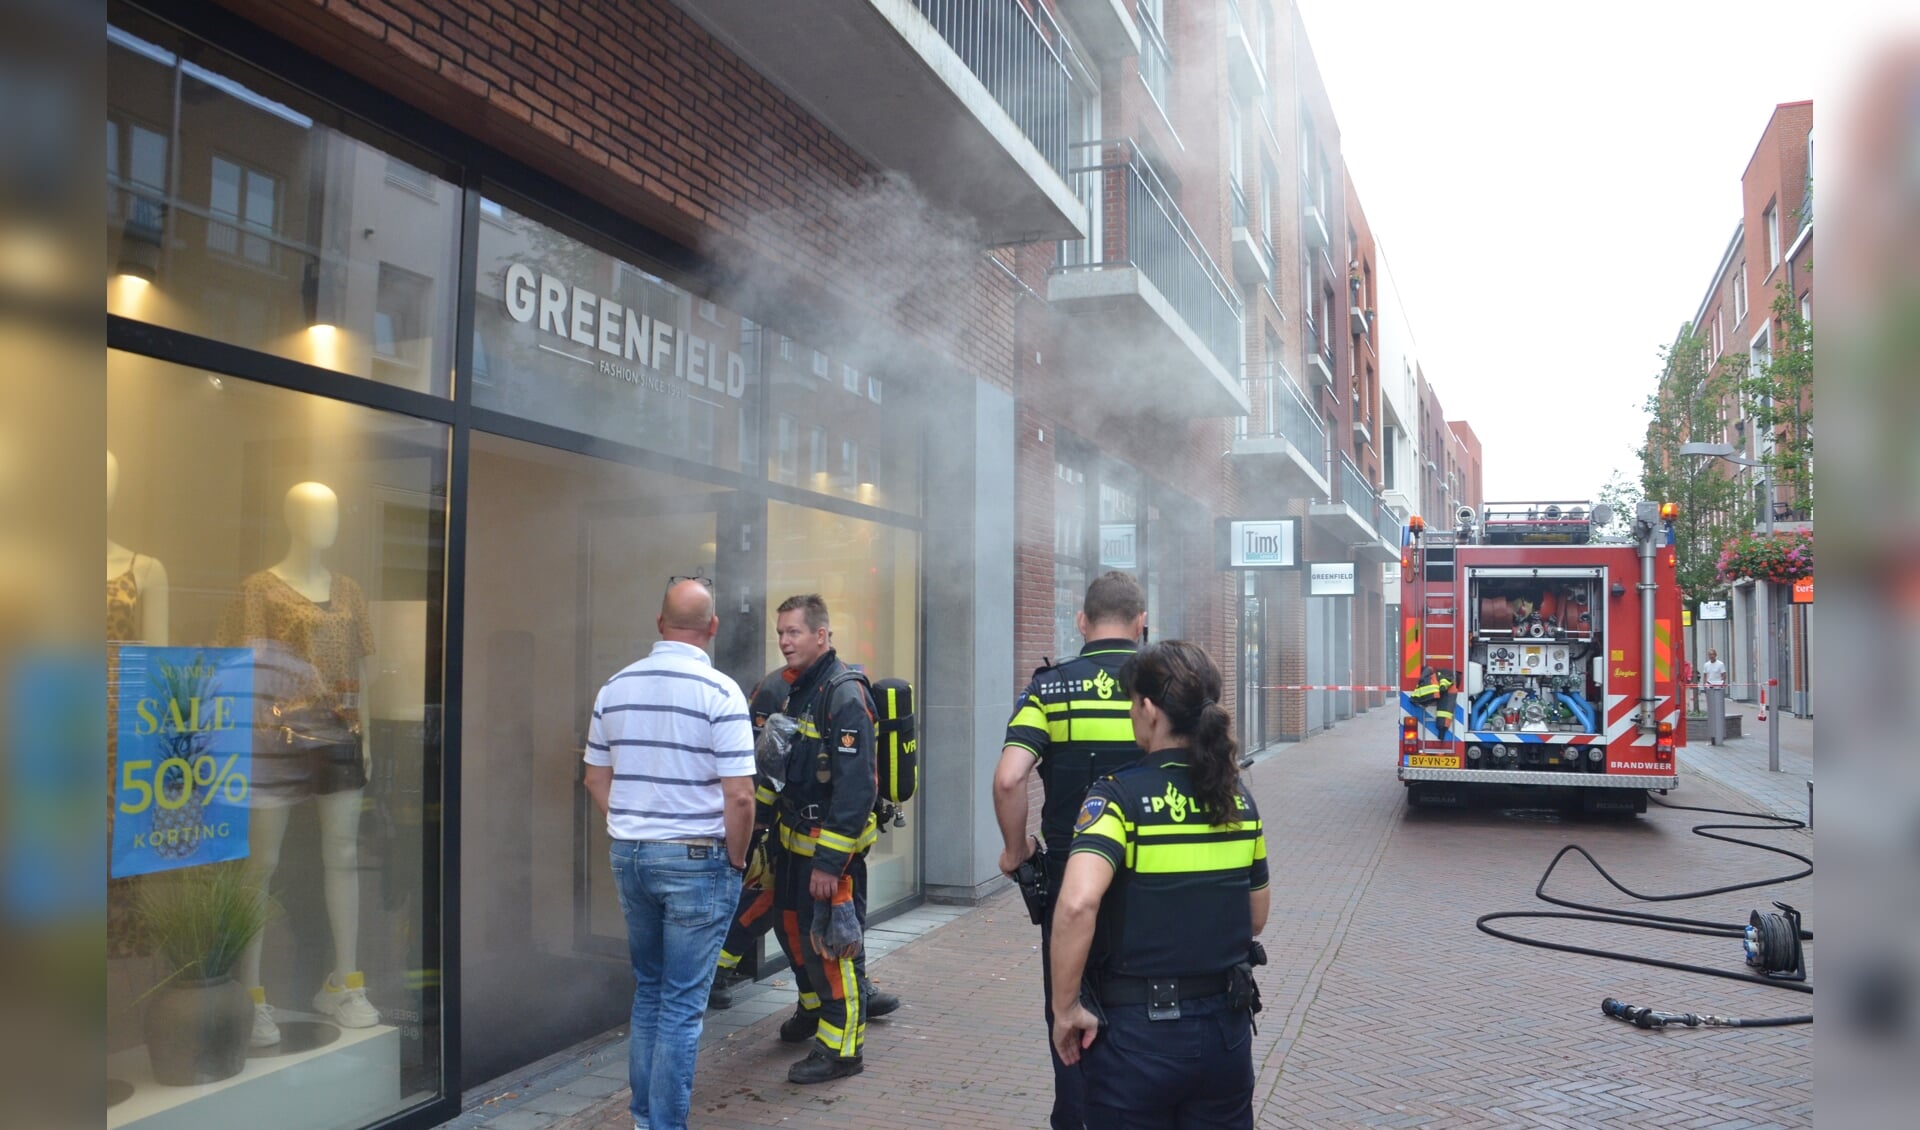 De hulpdiensten die ter plaatse kwamen konden al snel concluderen dat het loos alarm was. (foto: Rob de Jong/112hm.nl)